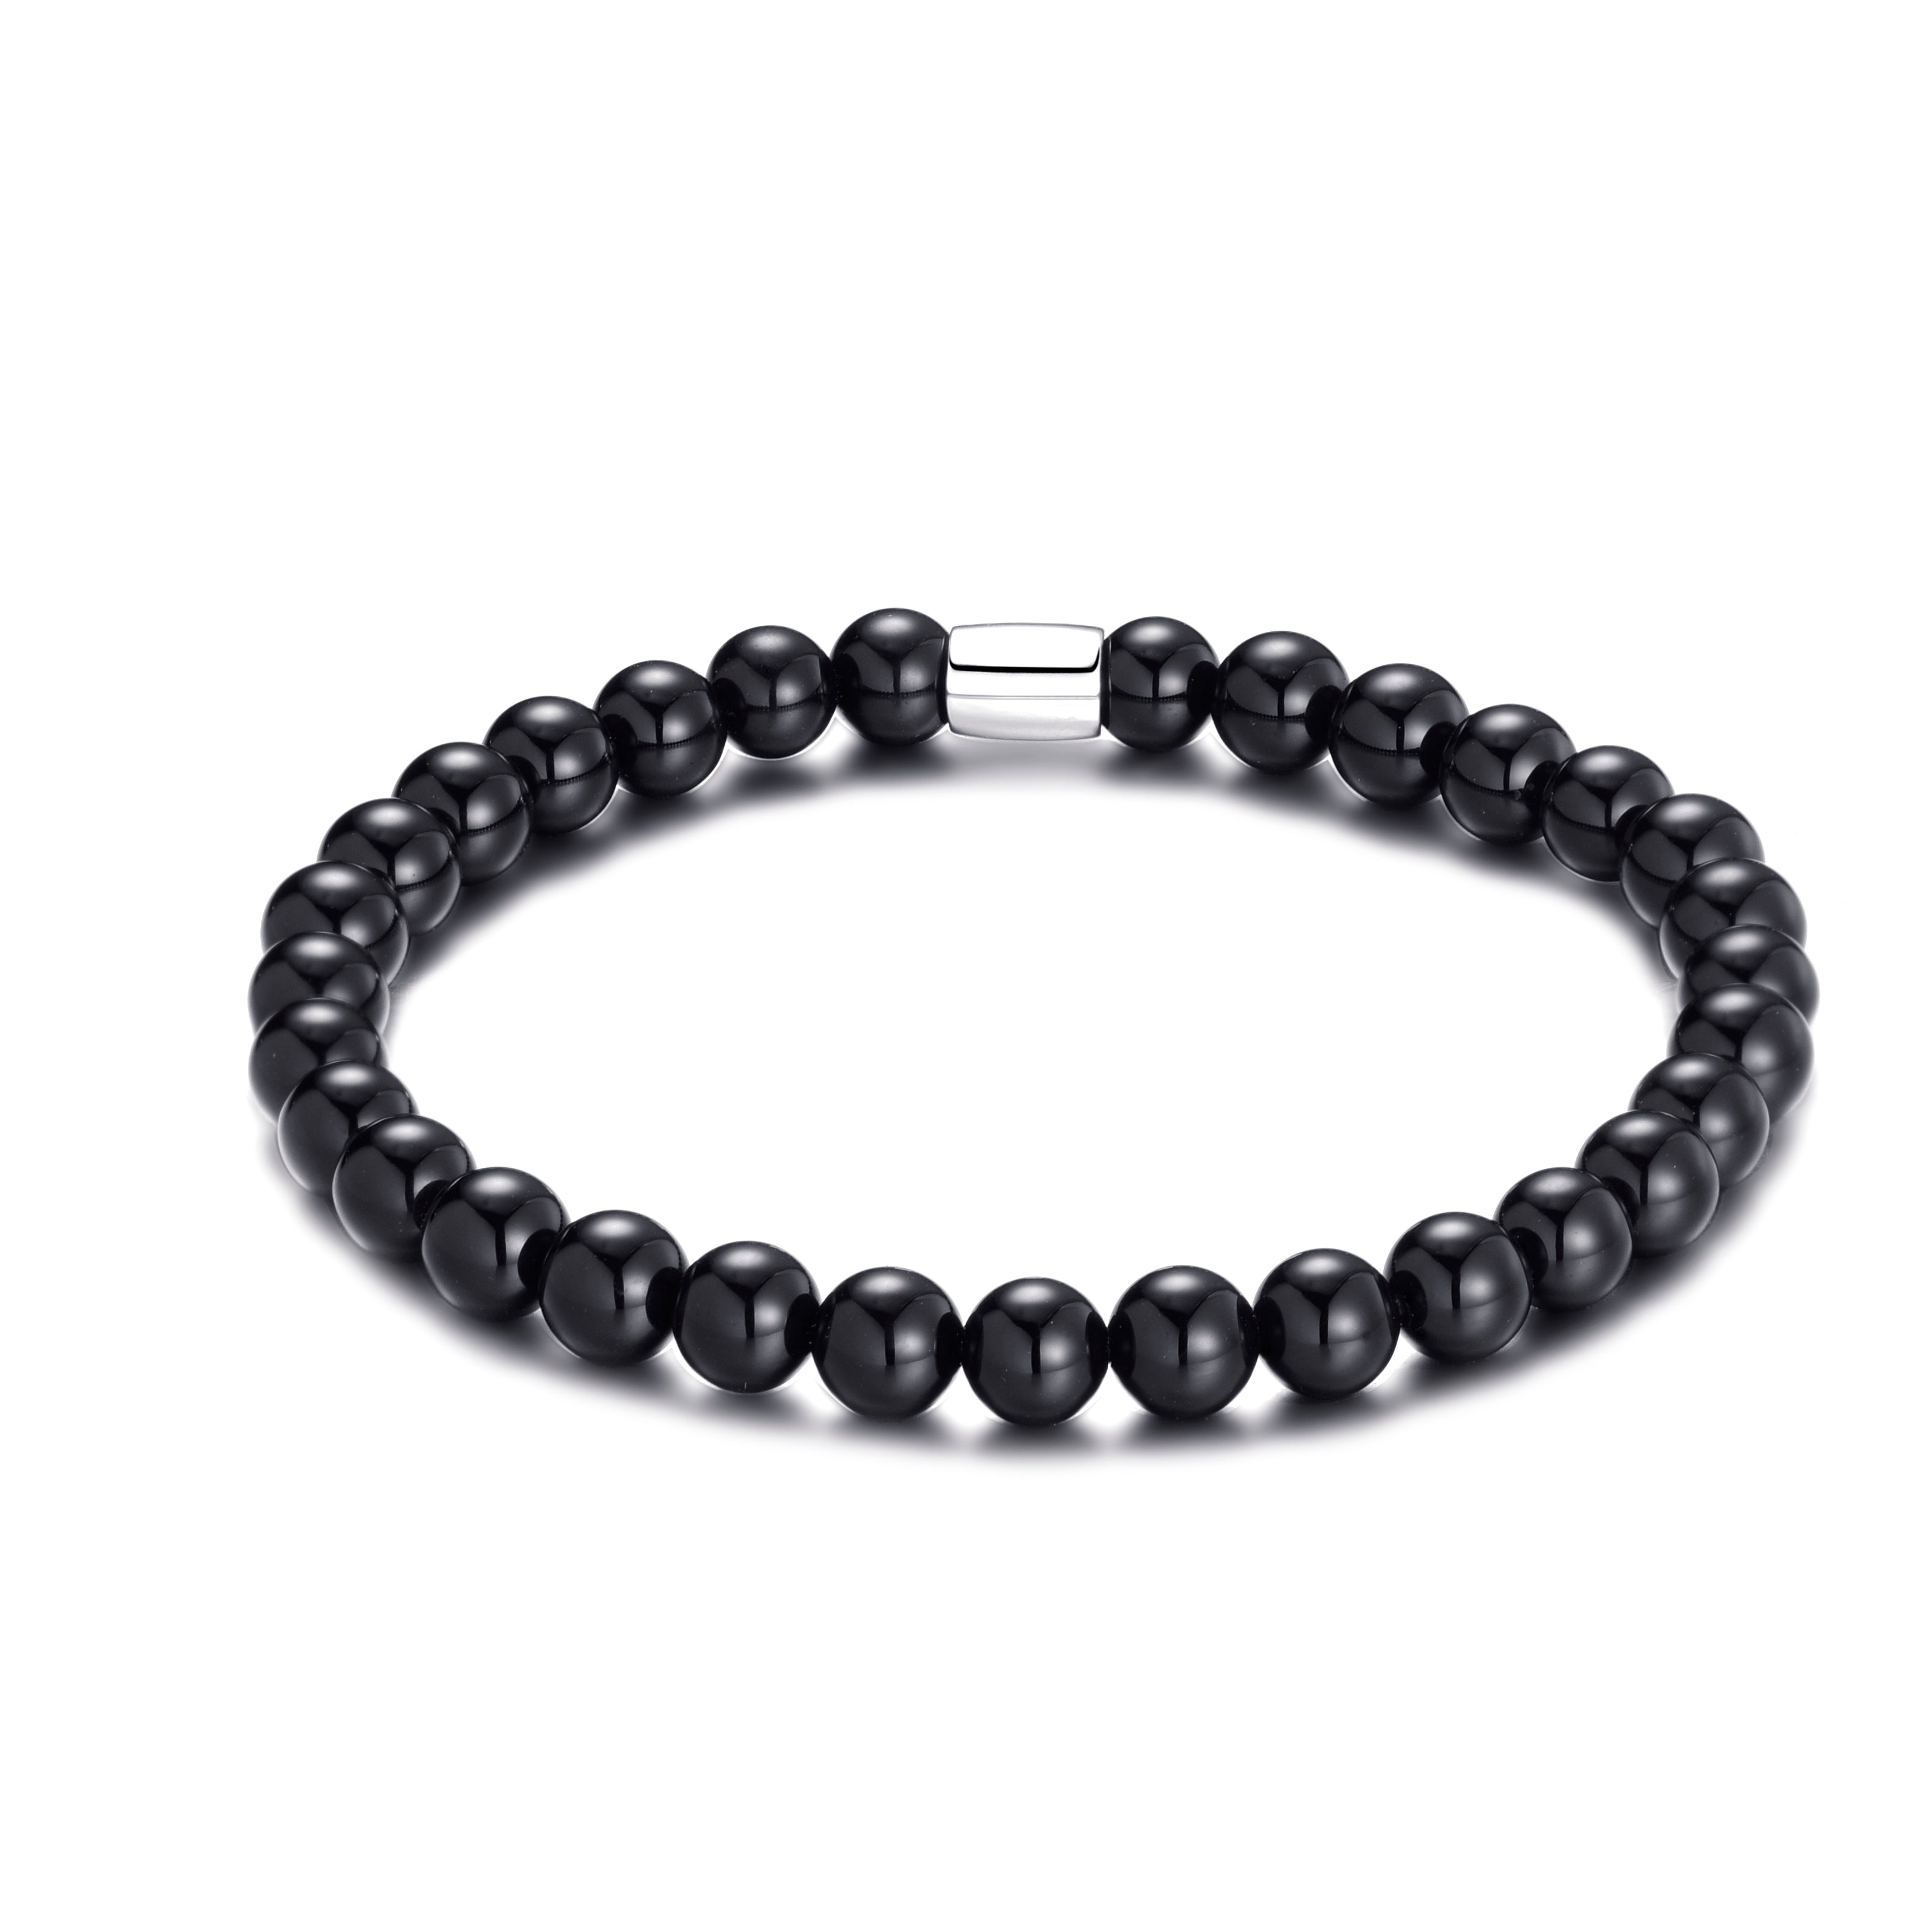 Black Onyx Gemstone Stretch Bracelet by Philip Jones Jewellery